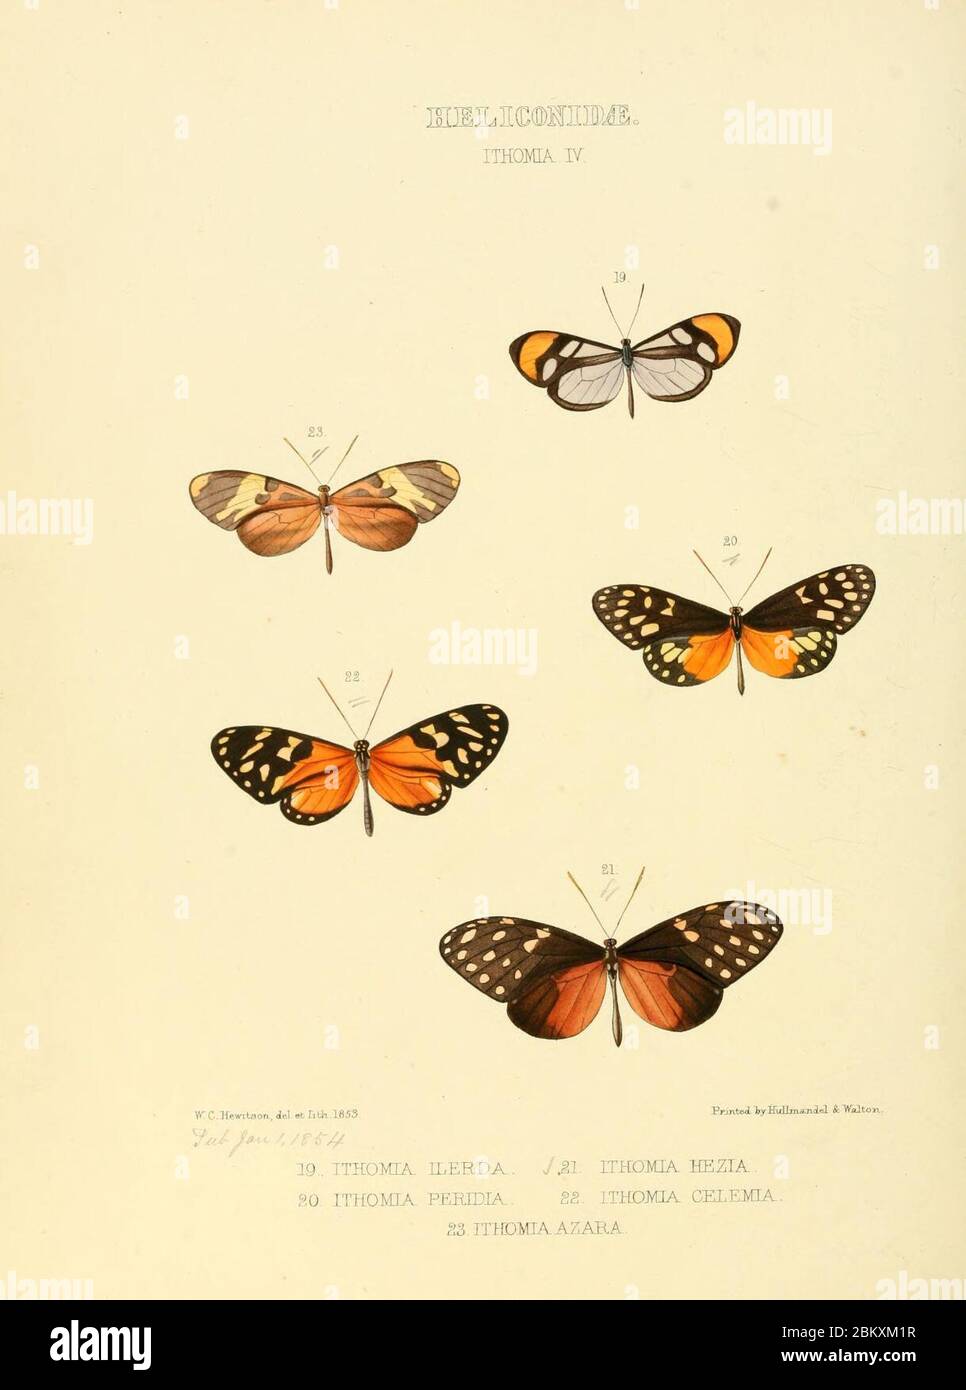 Illustrazioni di nuove specie di farfalle esotiche (Heliconidae- Ithomia IV) Foto Stock